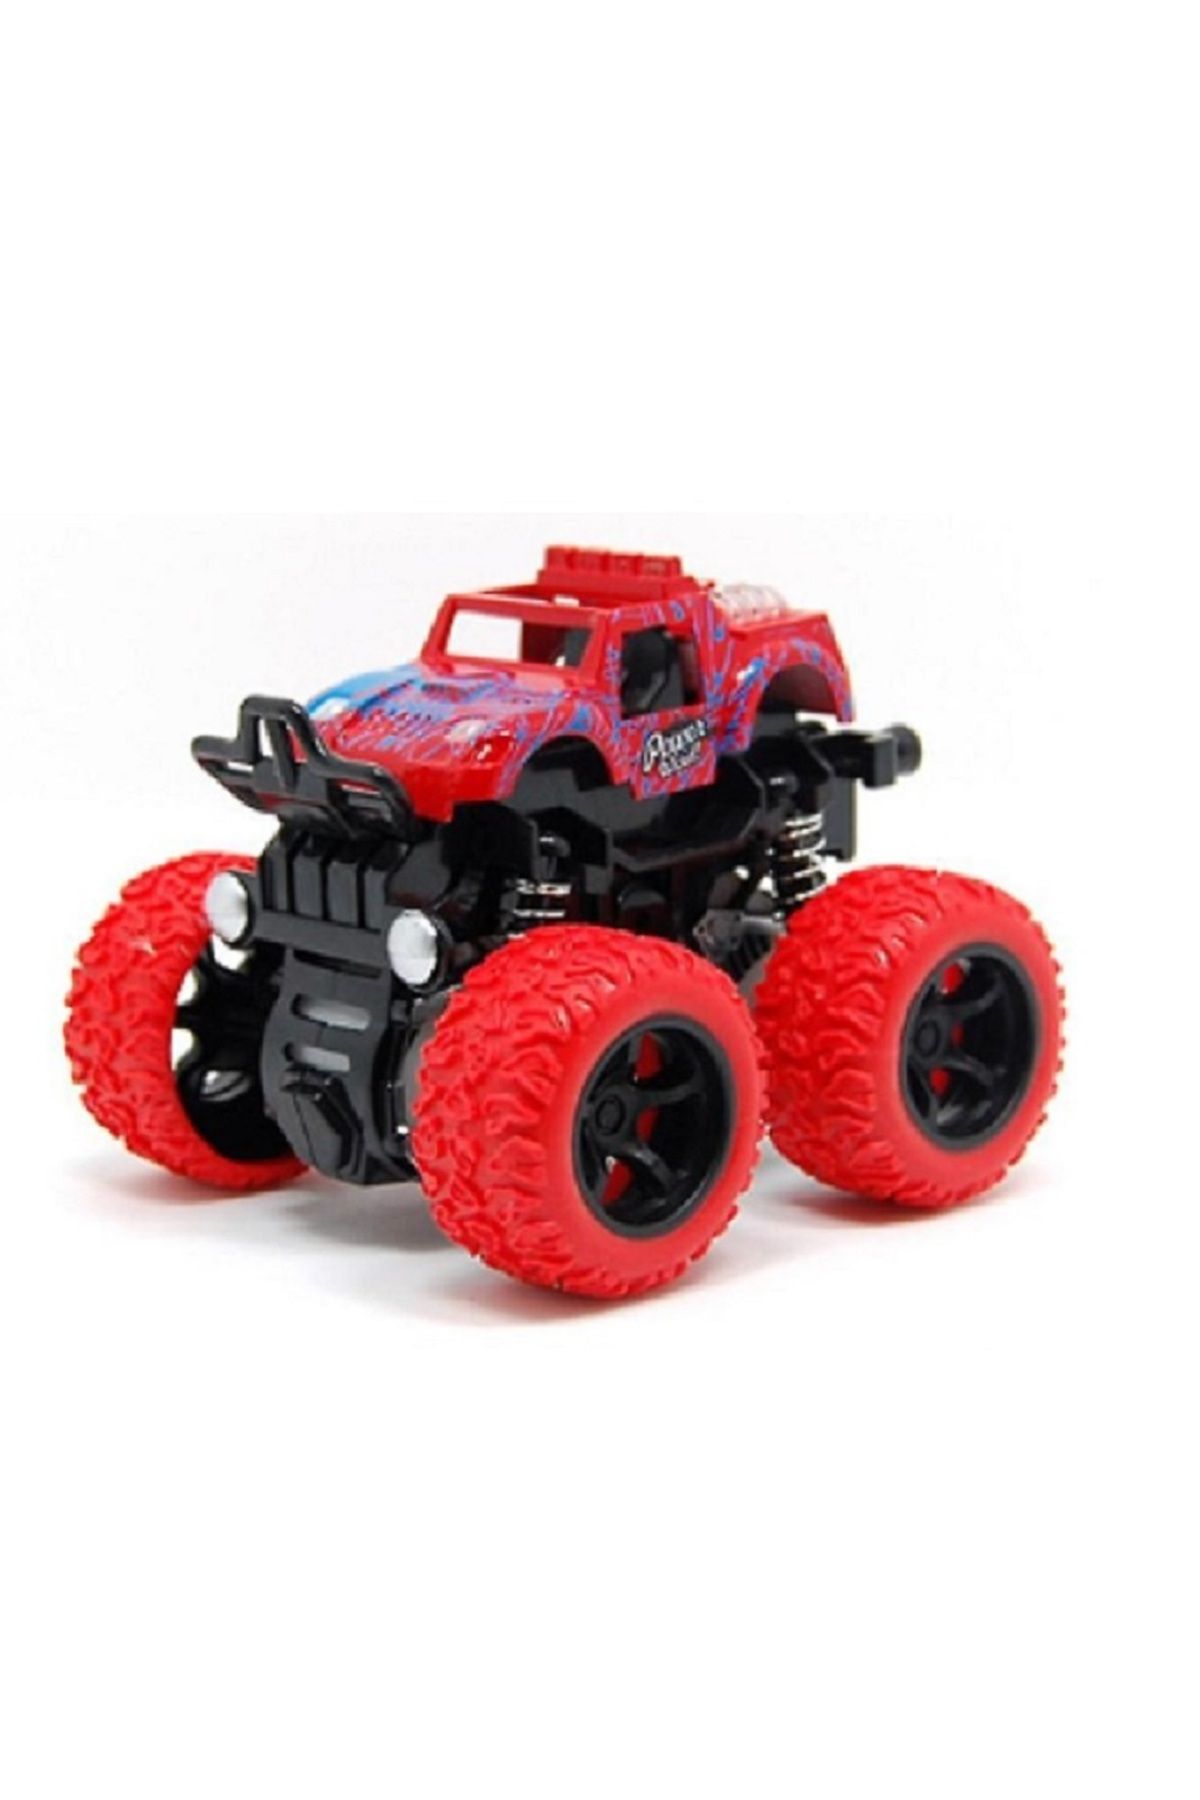 boragarage Oyuncak Büyük Tekerlekli Araba Jeep  (big foot 1:36 ölçek)sürtmeli motor hareket KIRMIZI